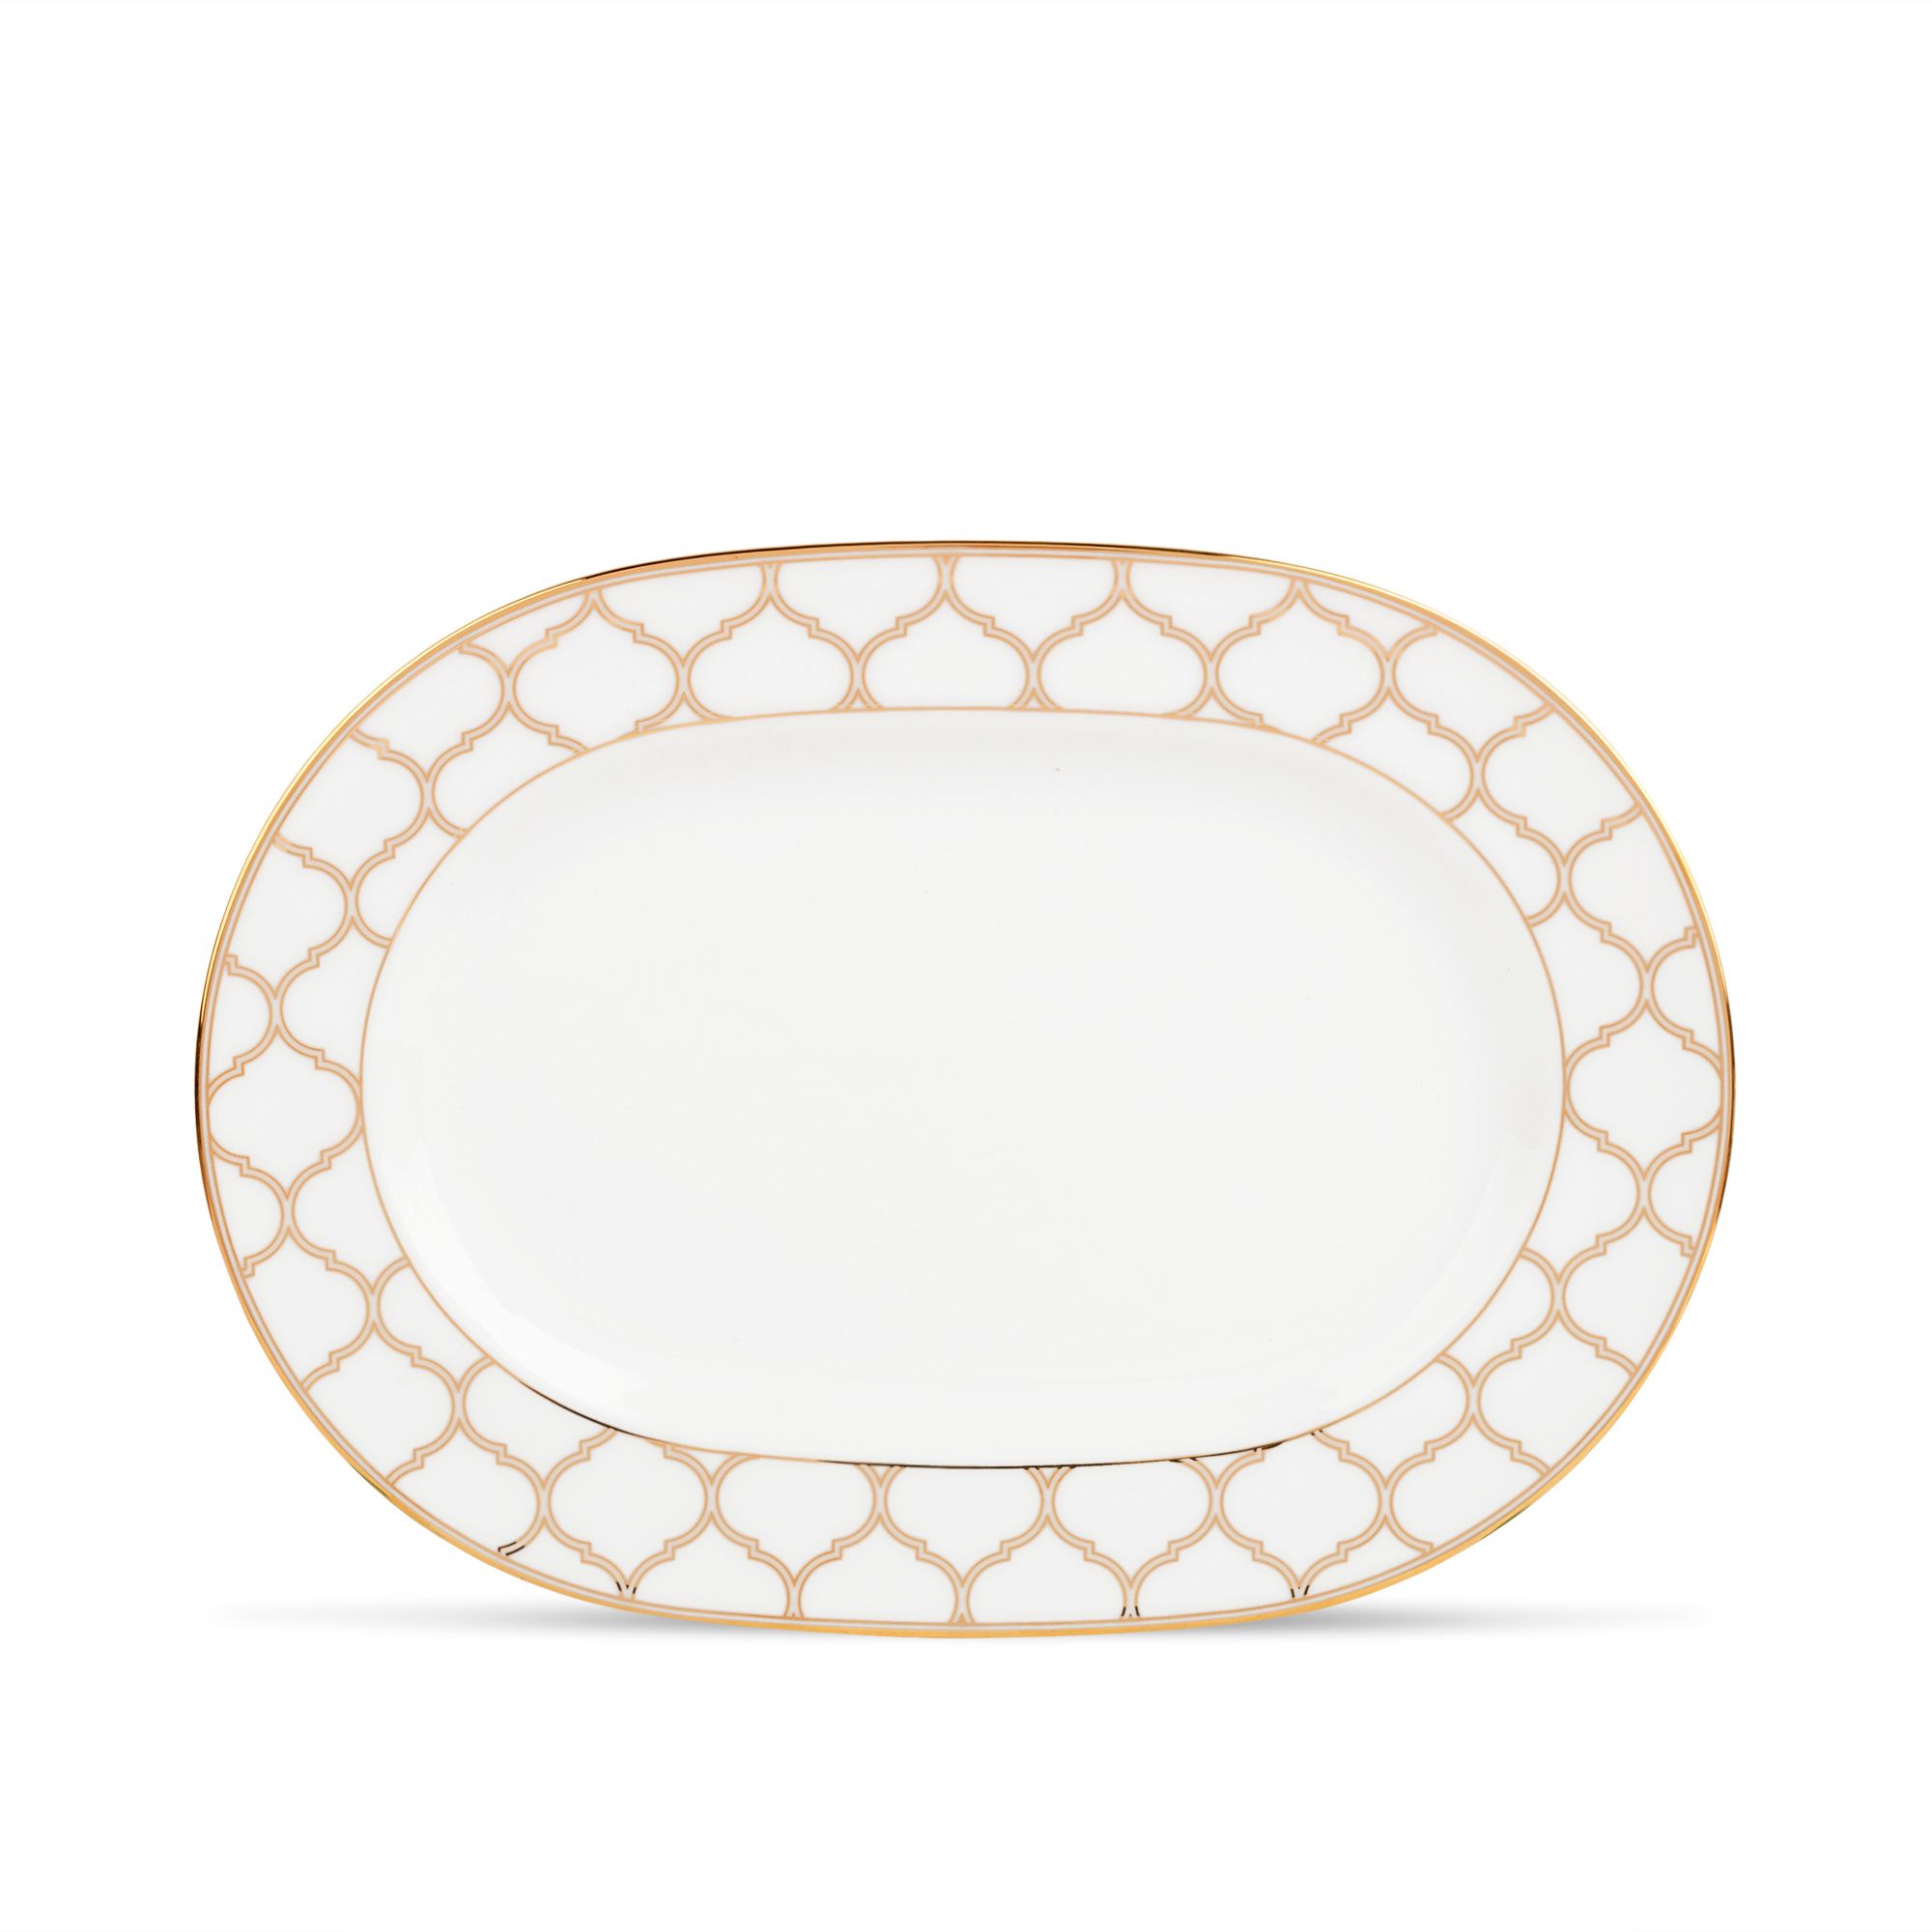  Đĩa Oval cỡ nhỏ (size S) dài 30,4cm sứ trắng | Eternal Palace Gold 1728L-91045 